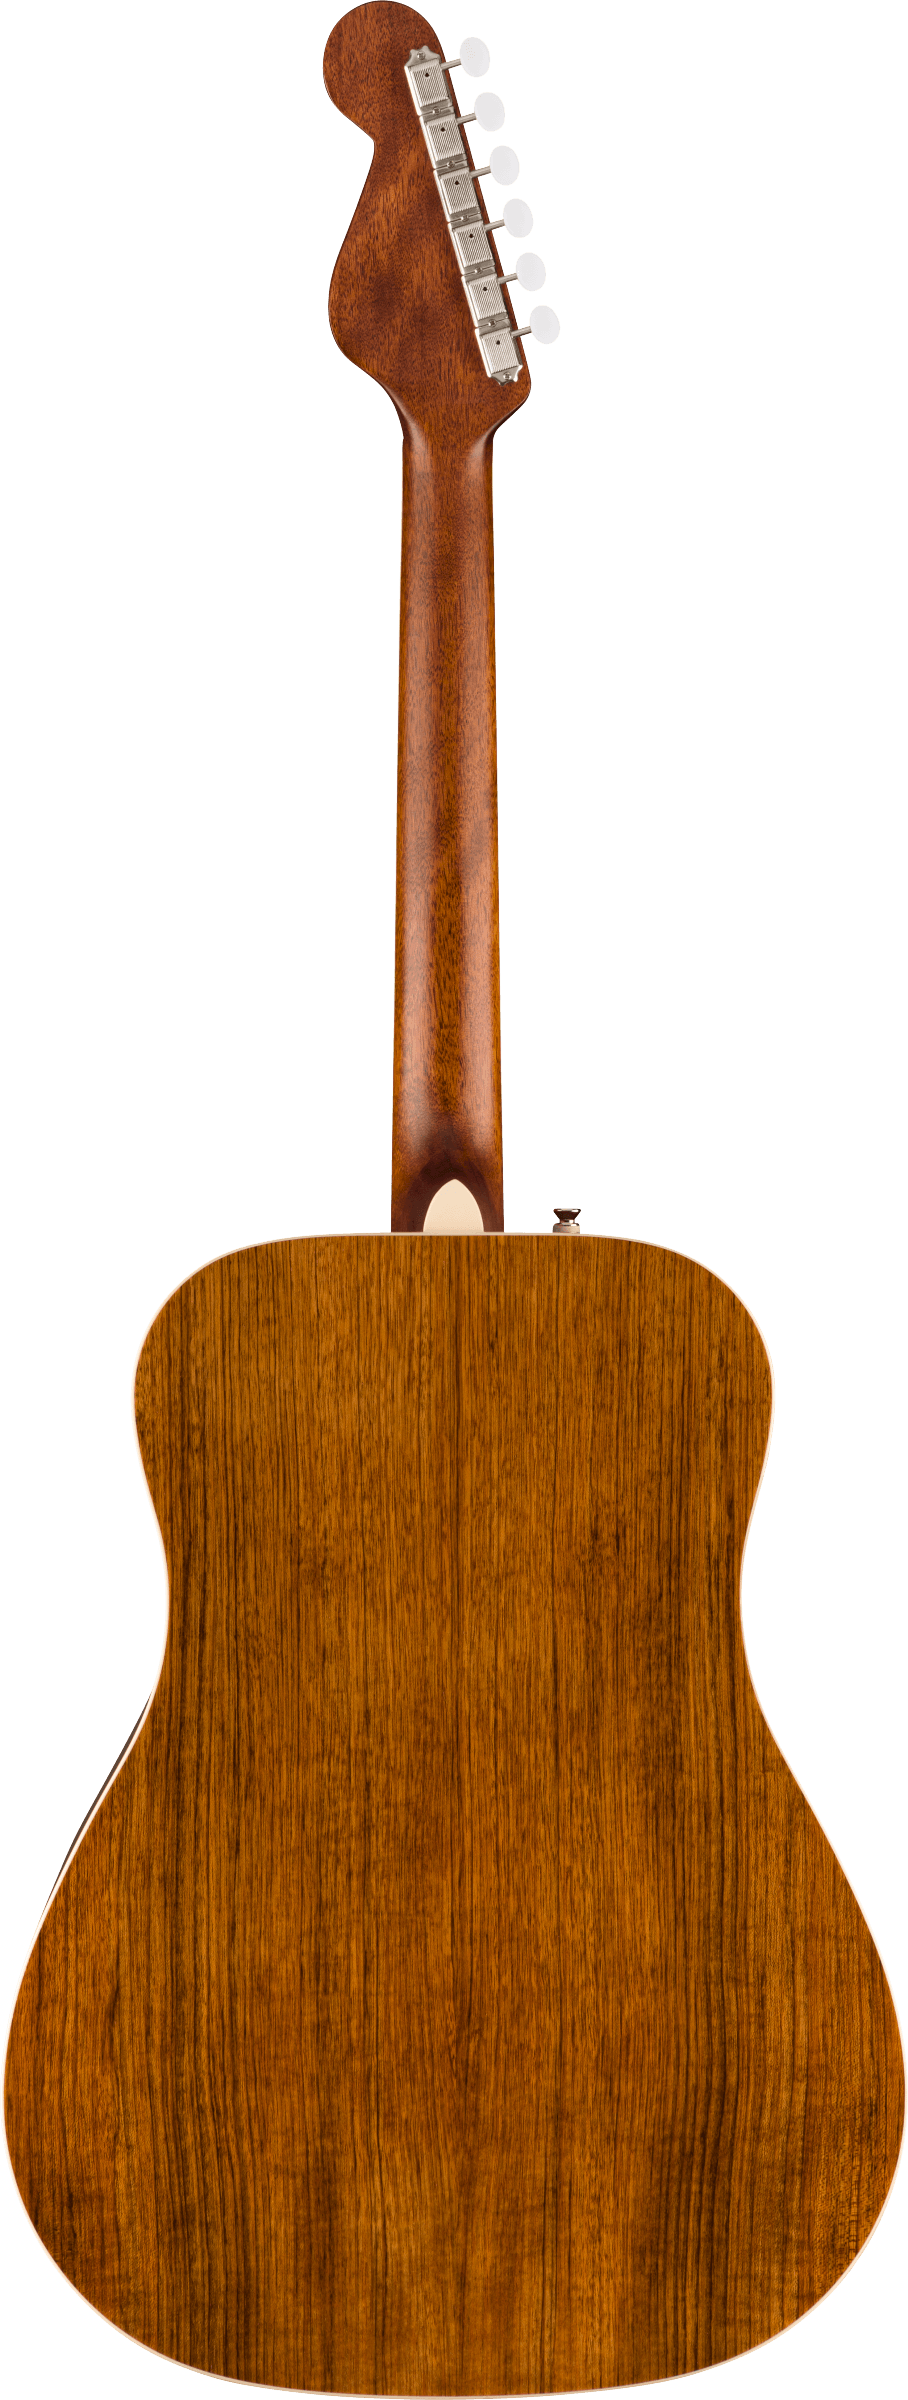 Back of Fender King Vintage Ovangkol Fingerboard Aged White Pickguard Mojave.